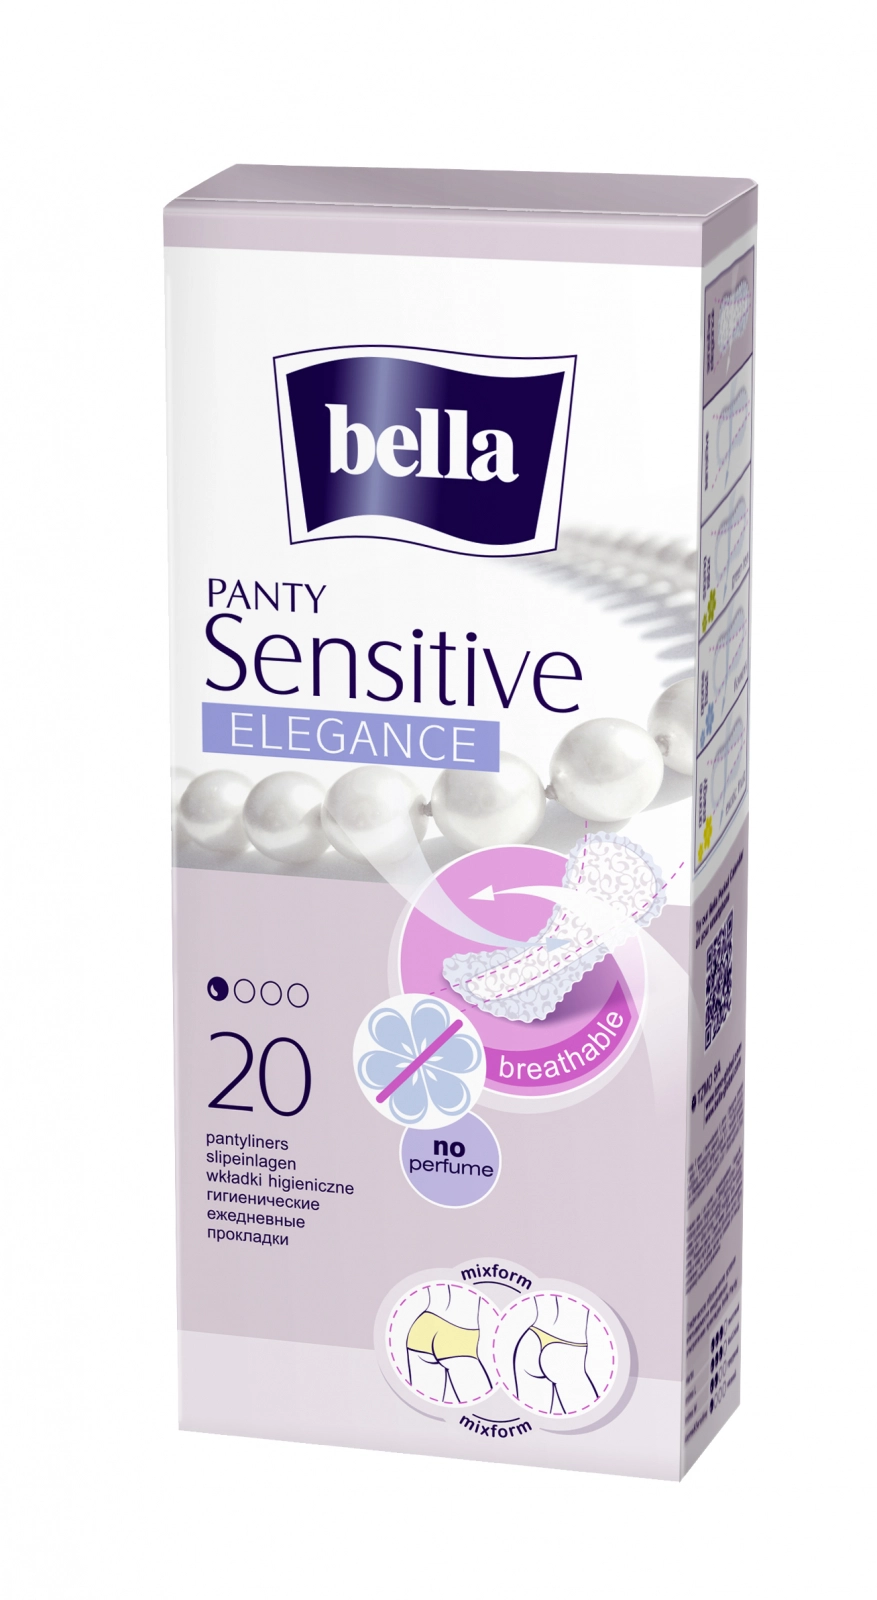 Absorbante zilnice Panty Sensitive Elegance, 20 bucati, Bella